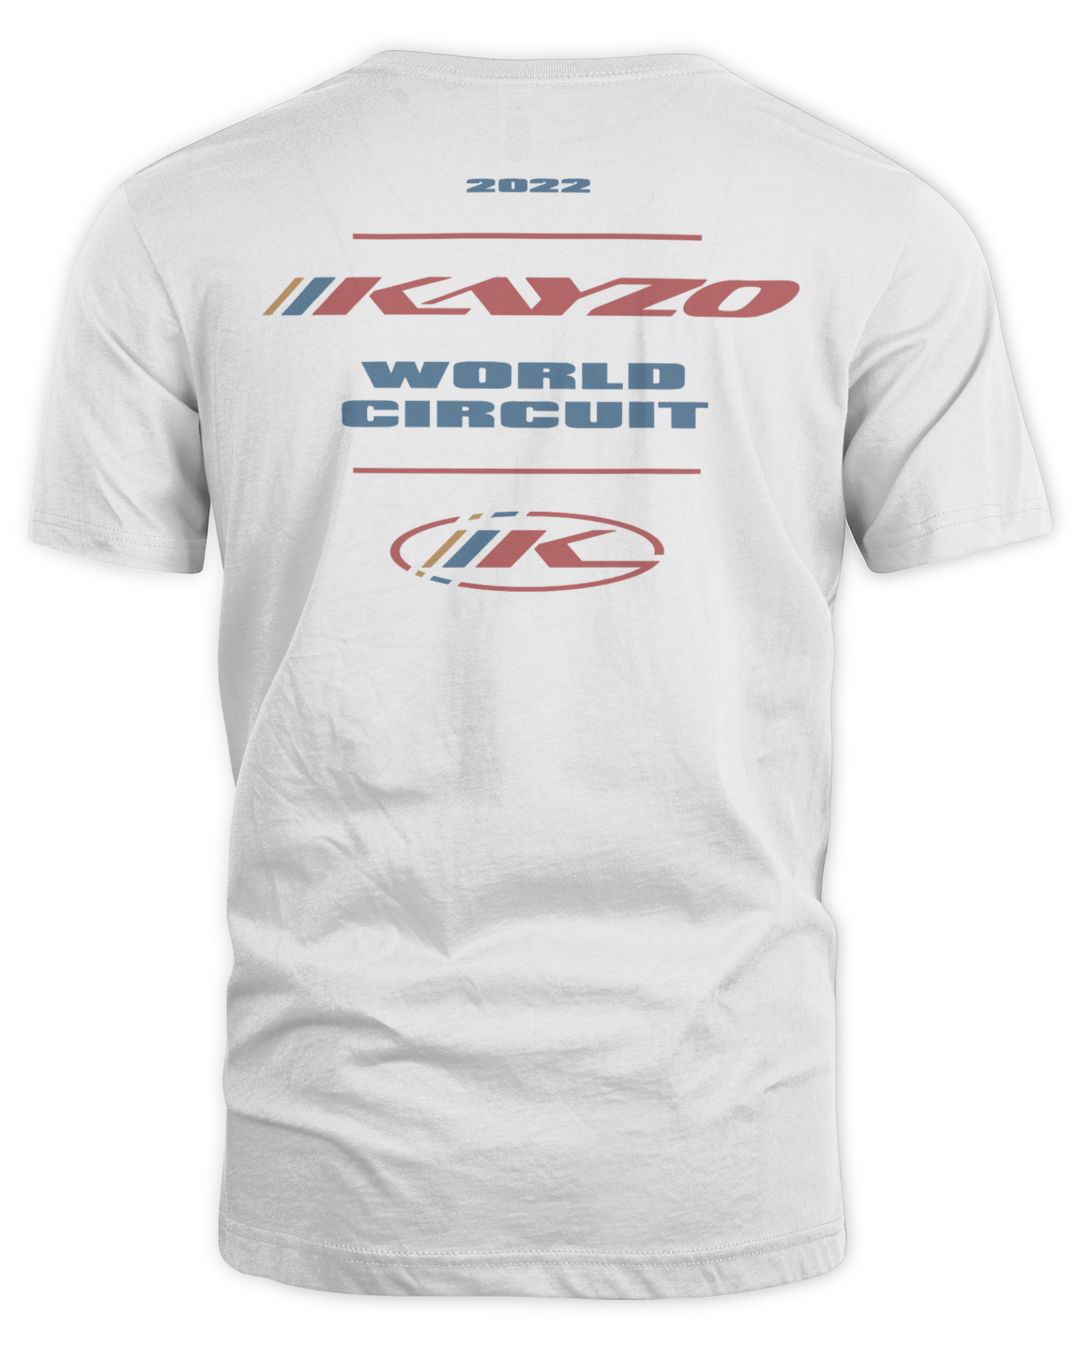 Kayzo Merch Ws Circuit Shirt